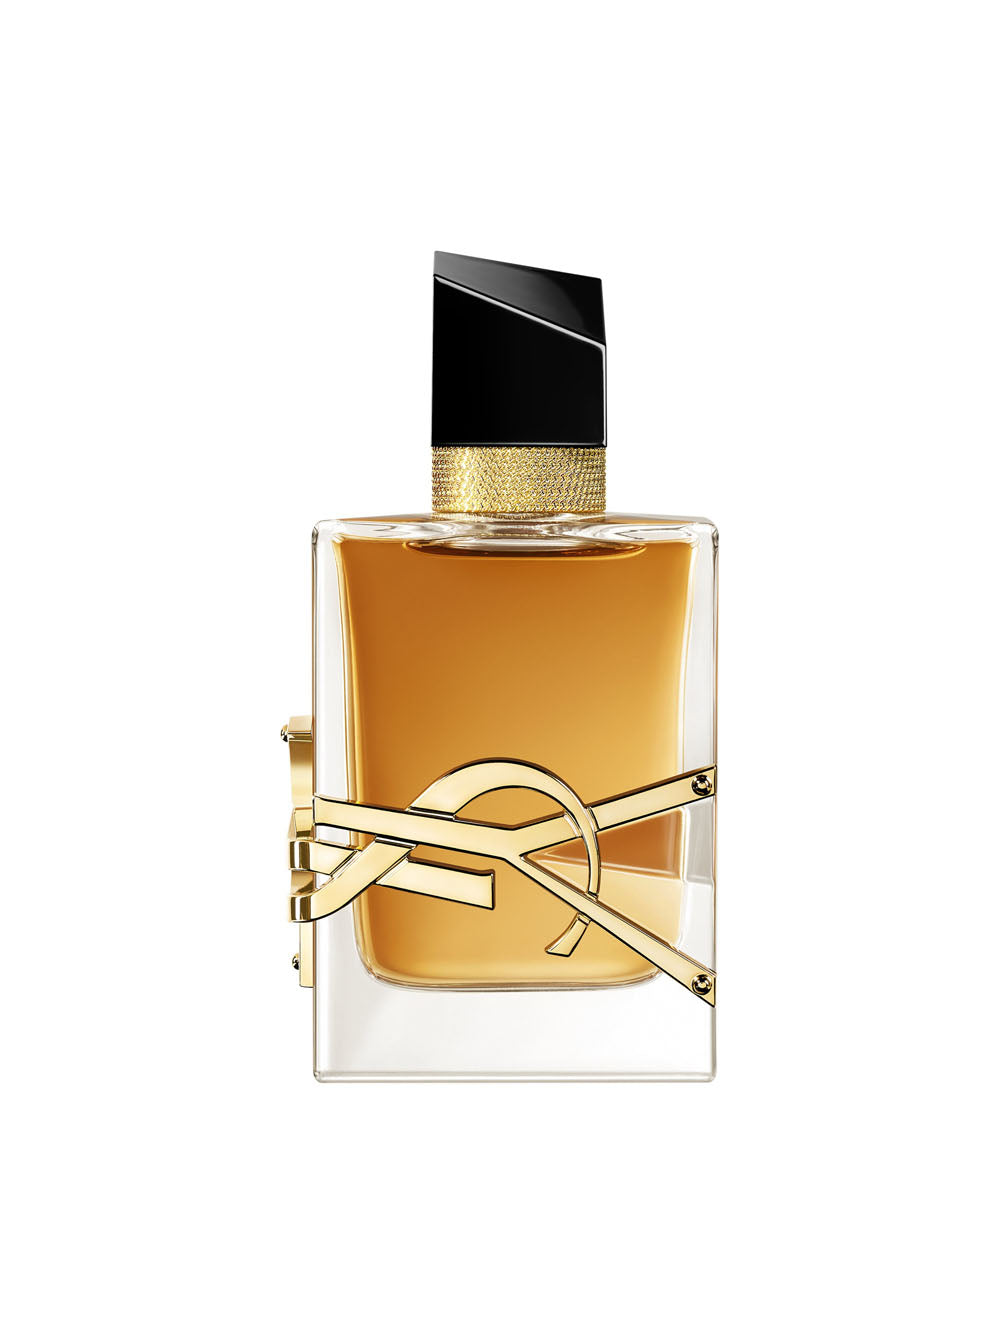 YVES SAINT LAURENT Libre Intense Eau de Parfum - 50ml